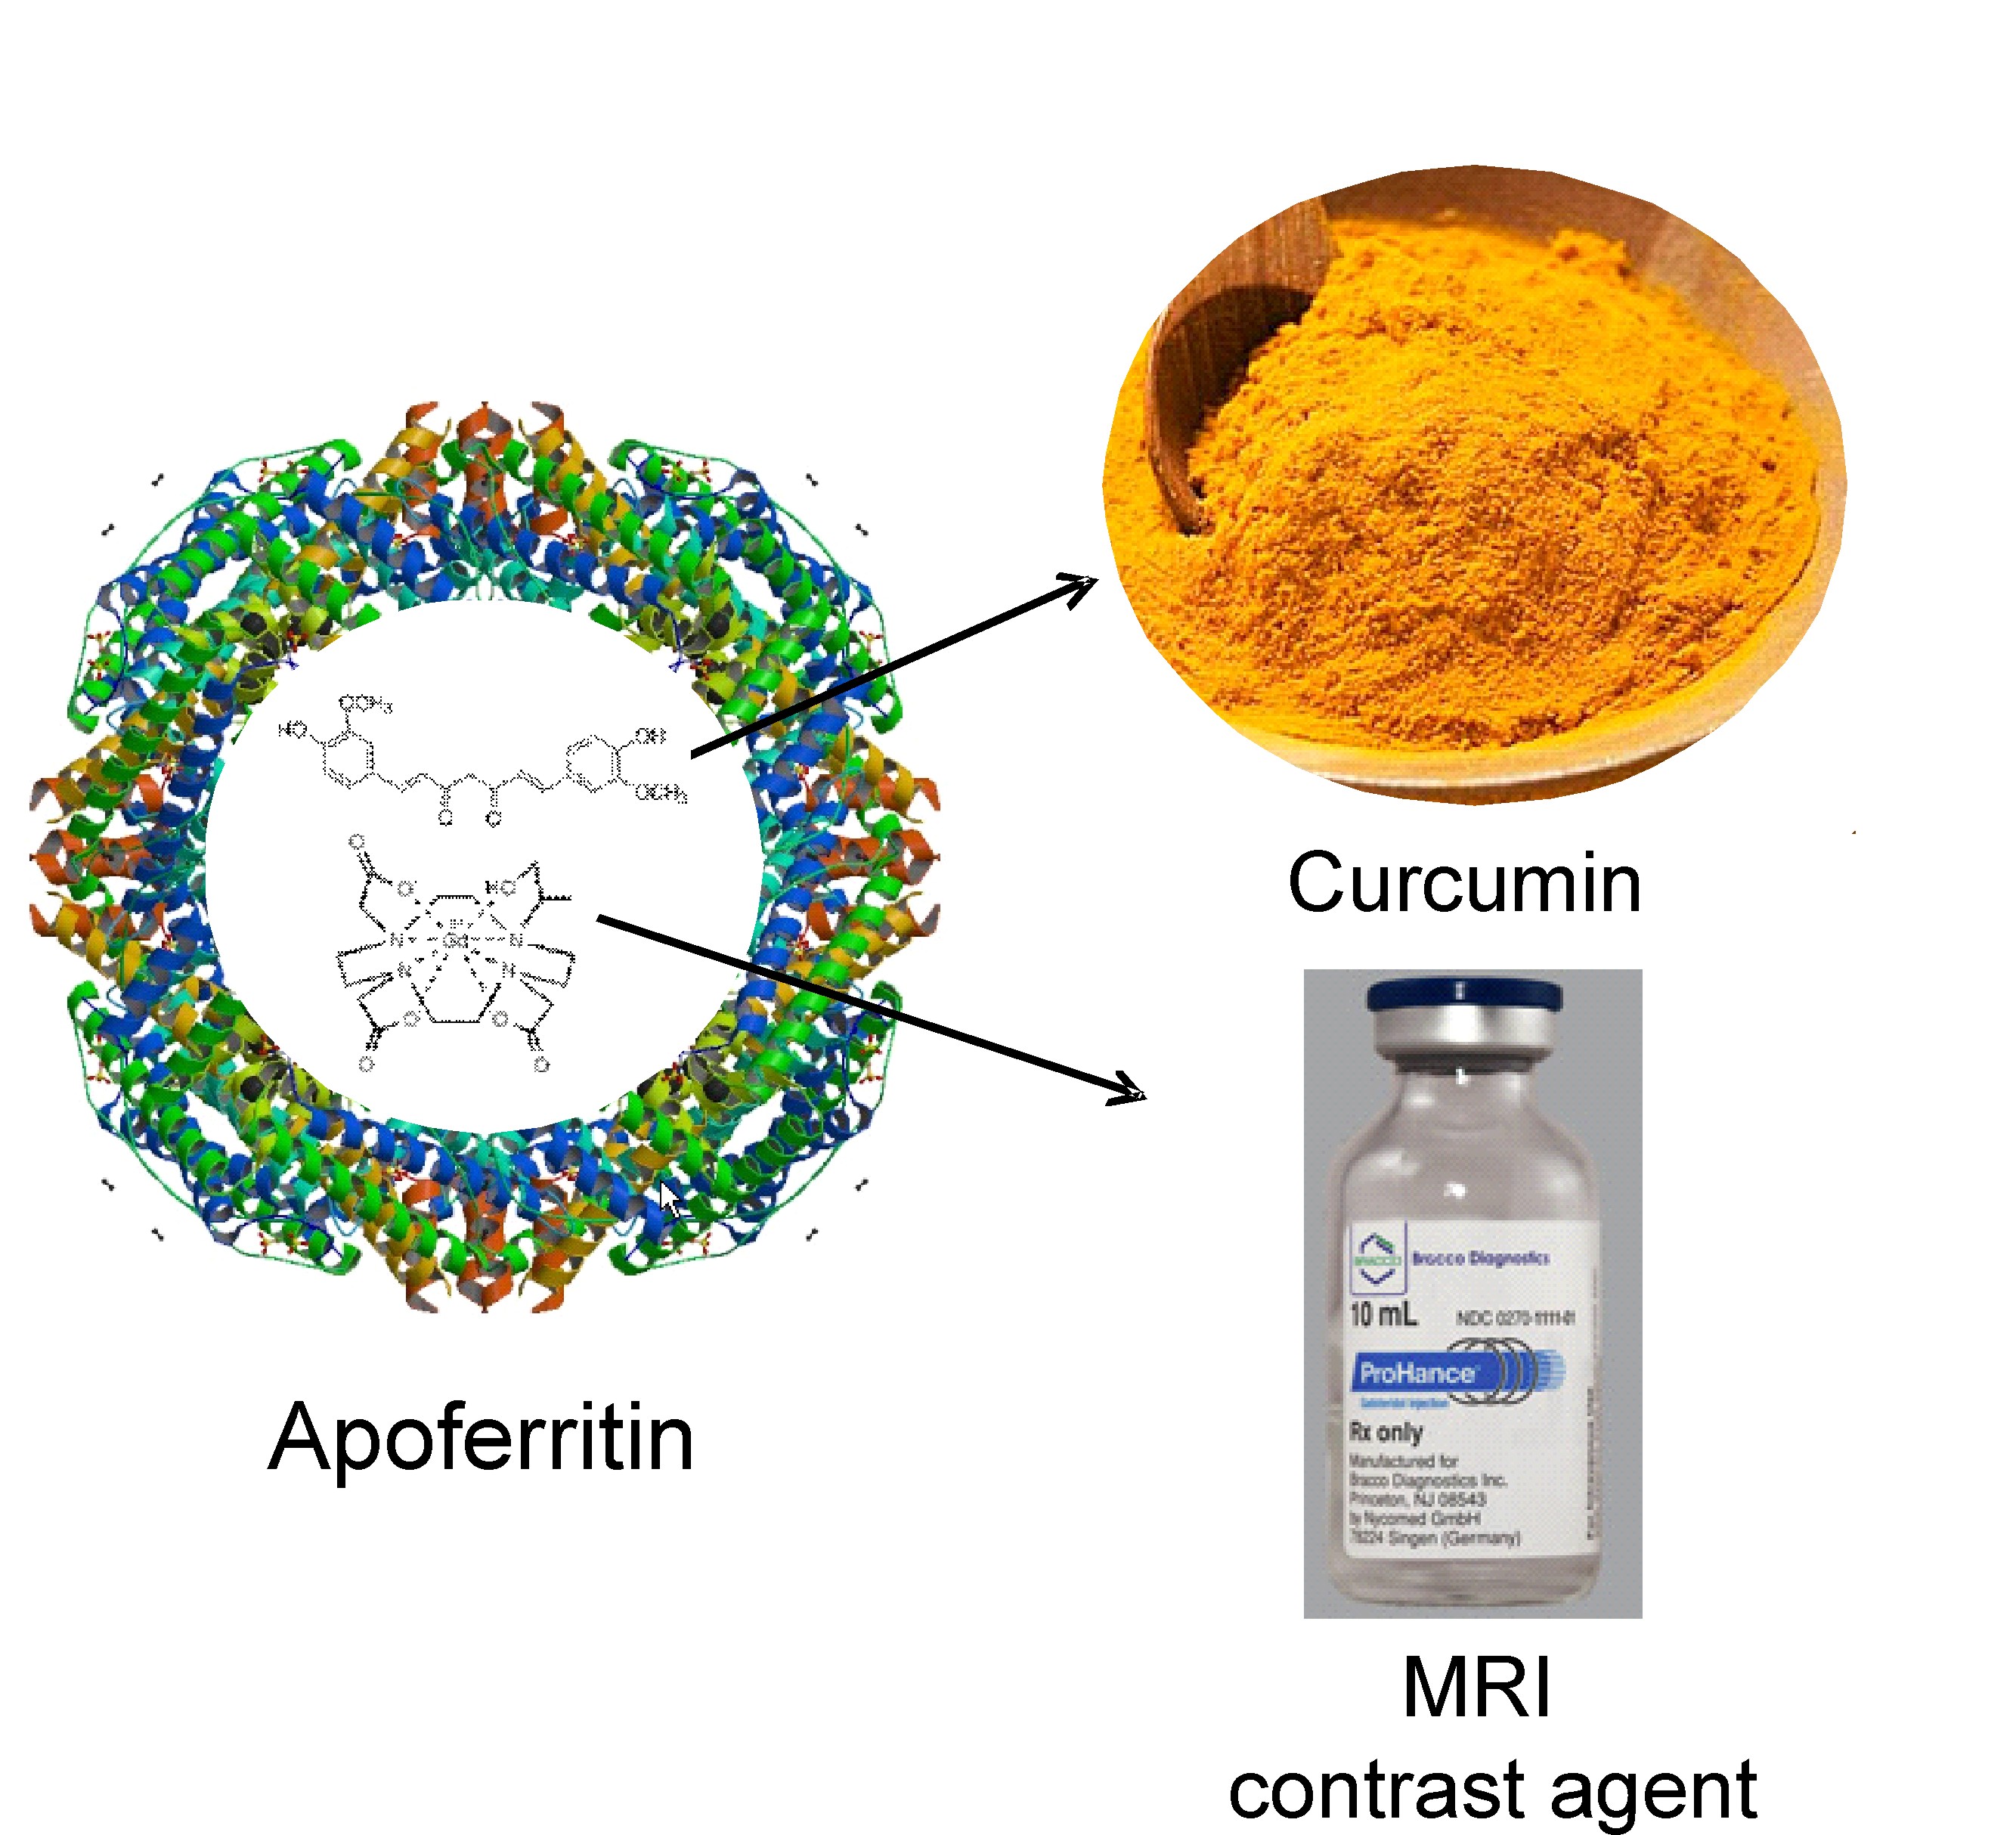 Apoferritin, curcumin and MRI contrast agents